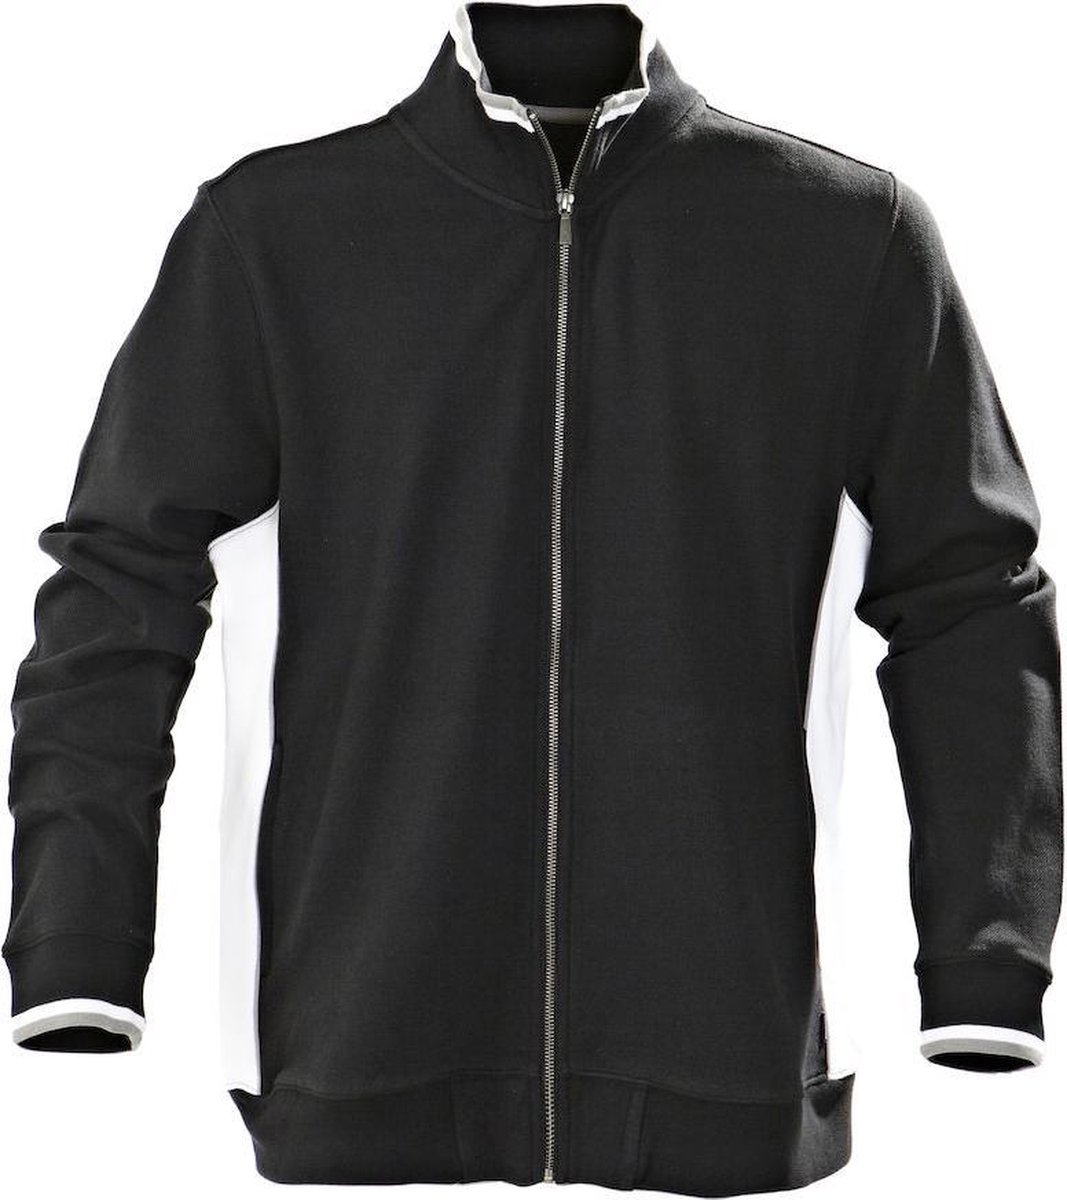 Harvest Atlanta Piqué Jacket Vest Zwart 2132018 - Maat M